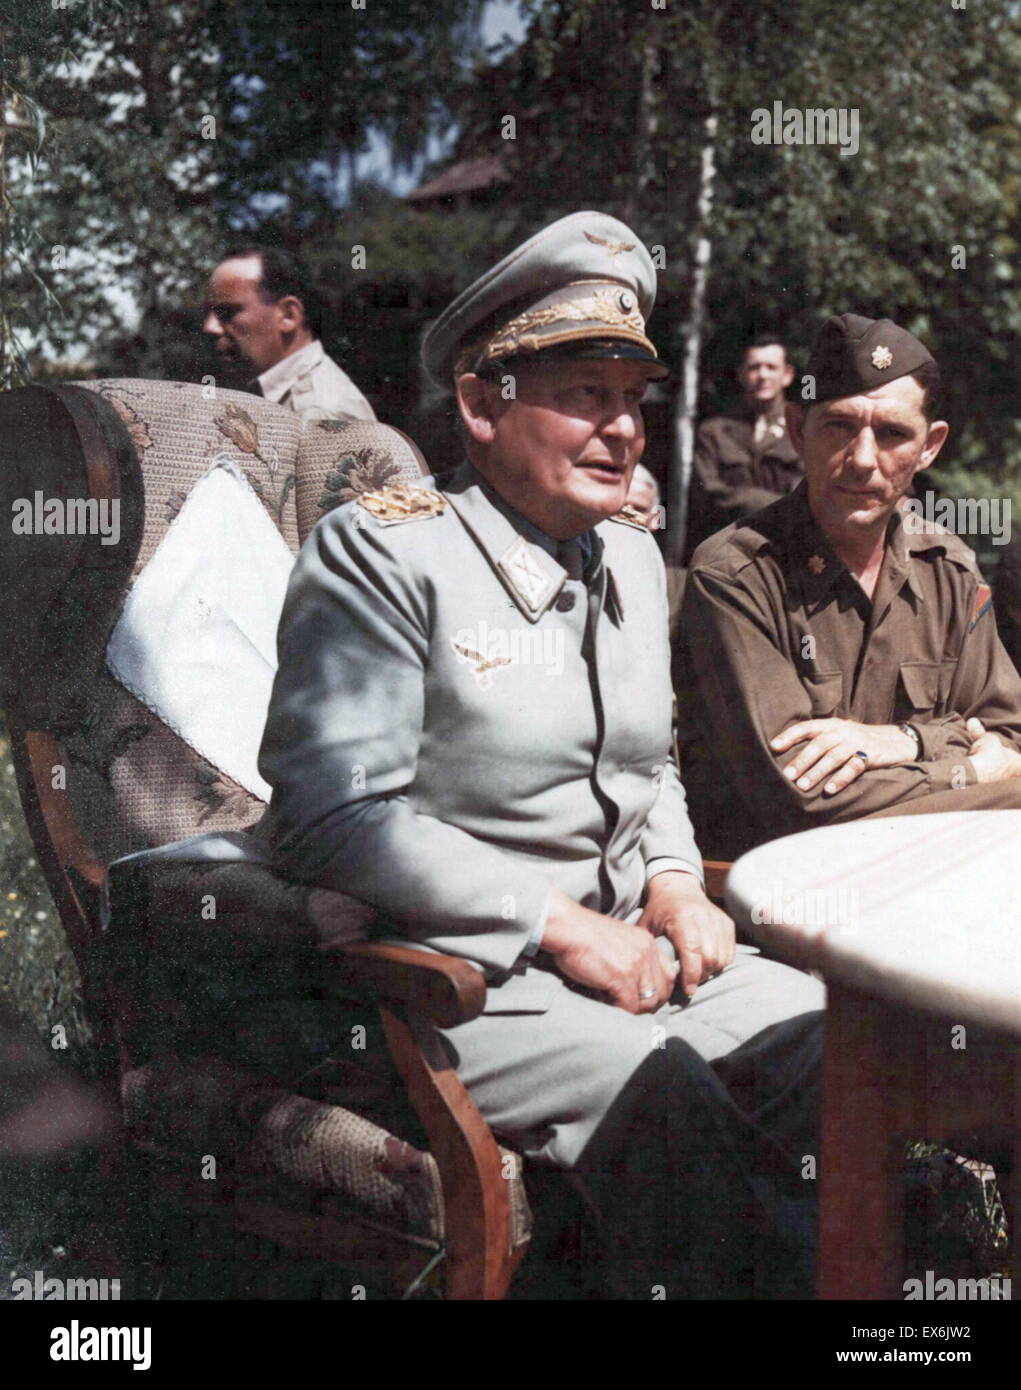 Wilhelm Hermann Goring ( 1893 - 15 octobre 1946) homme politique allemand du parti nazi (NSDAP),capturé en Allemagne 1945 Banque D'Images